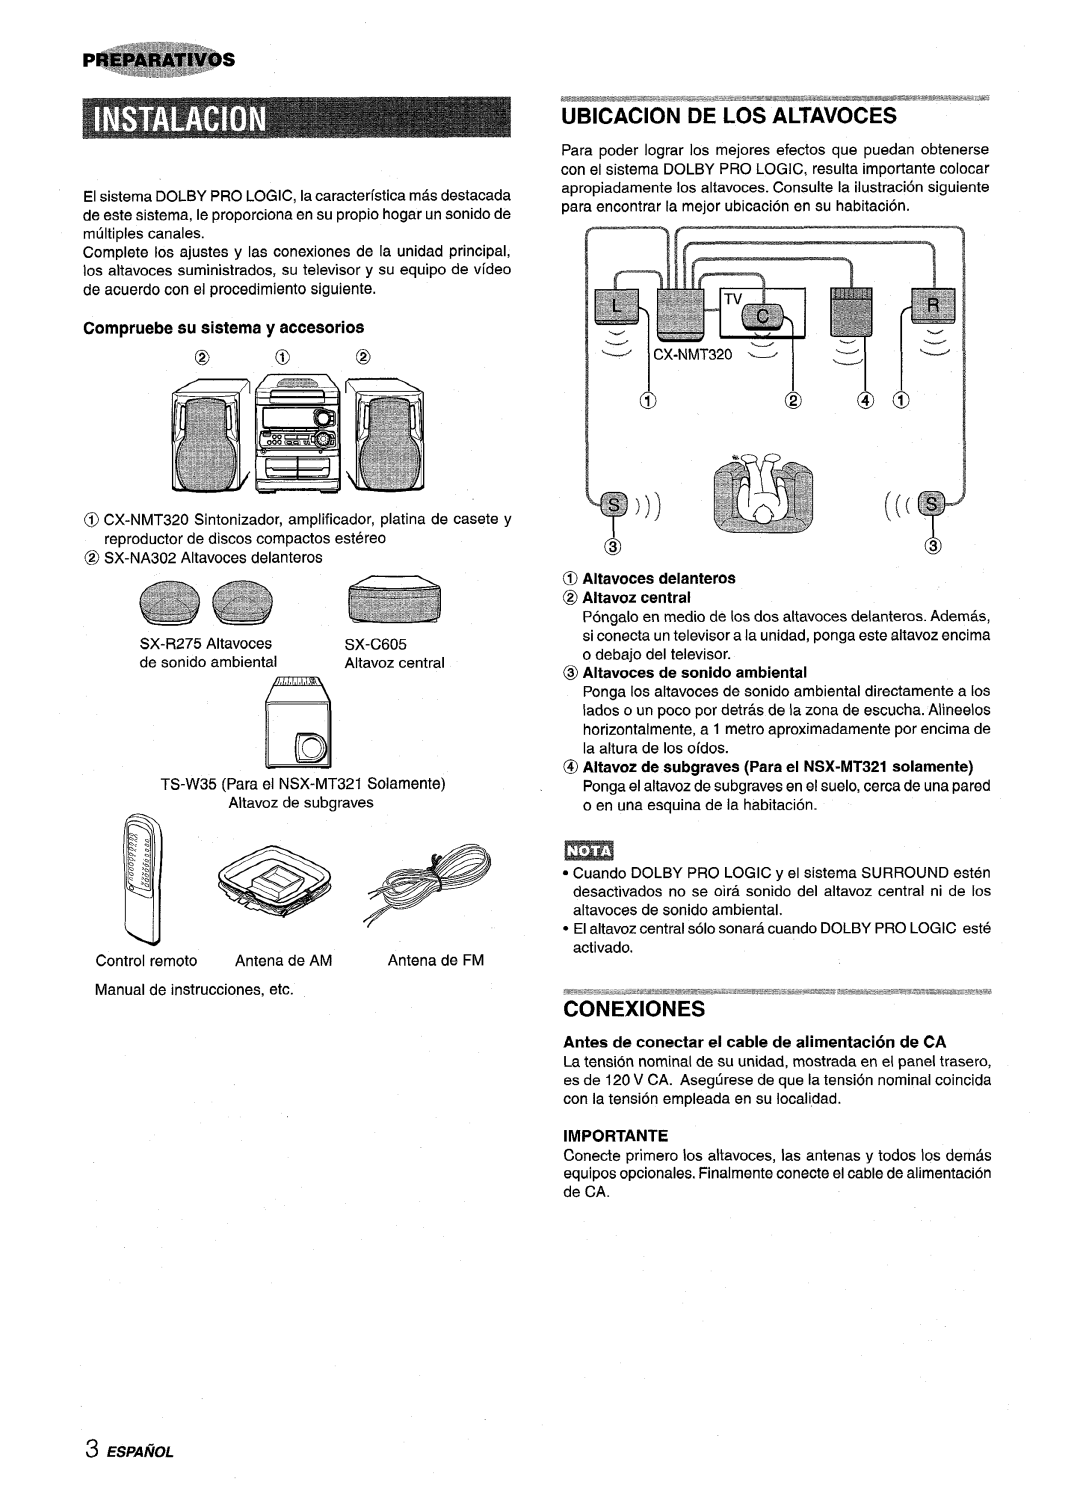 Sony NSX-MT320, SX-MT321 Ubicacion De Los Altavoces, Compruebe su sistema y accesorios @ 3@, Importante, Ilid, Espanol 